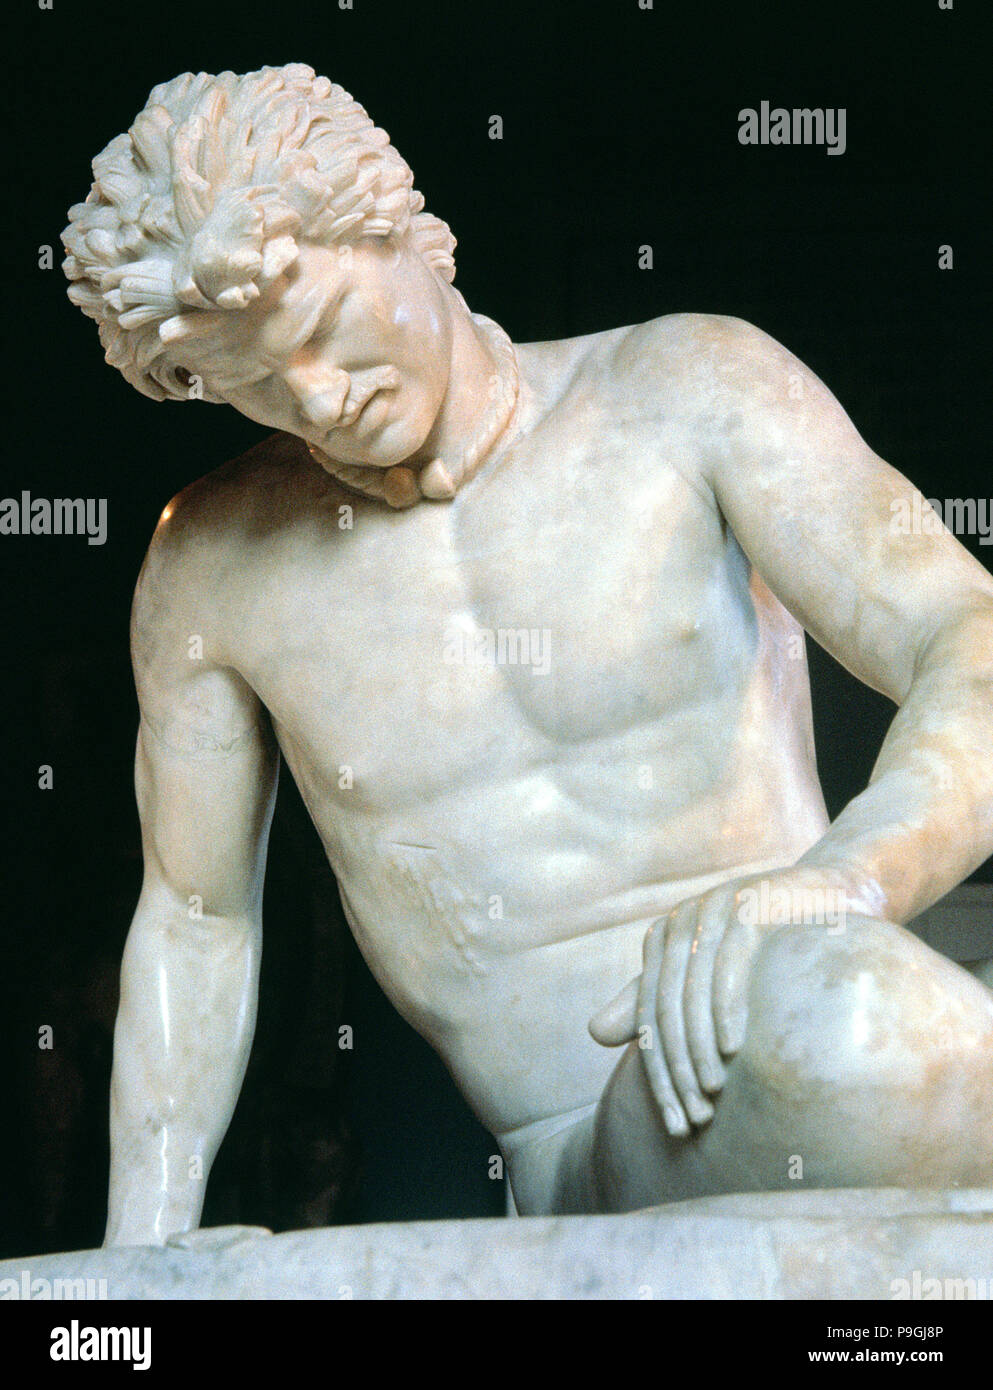 Il Galata, copia romana di un originale greco del III - II secolo a.c. dettaglio. Foto Stock